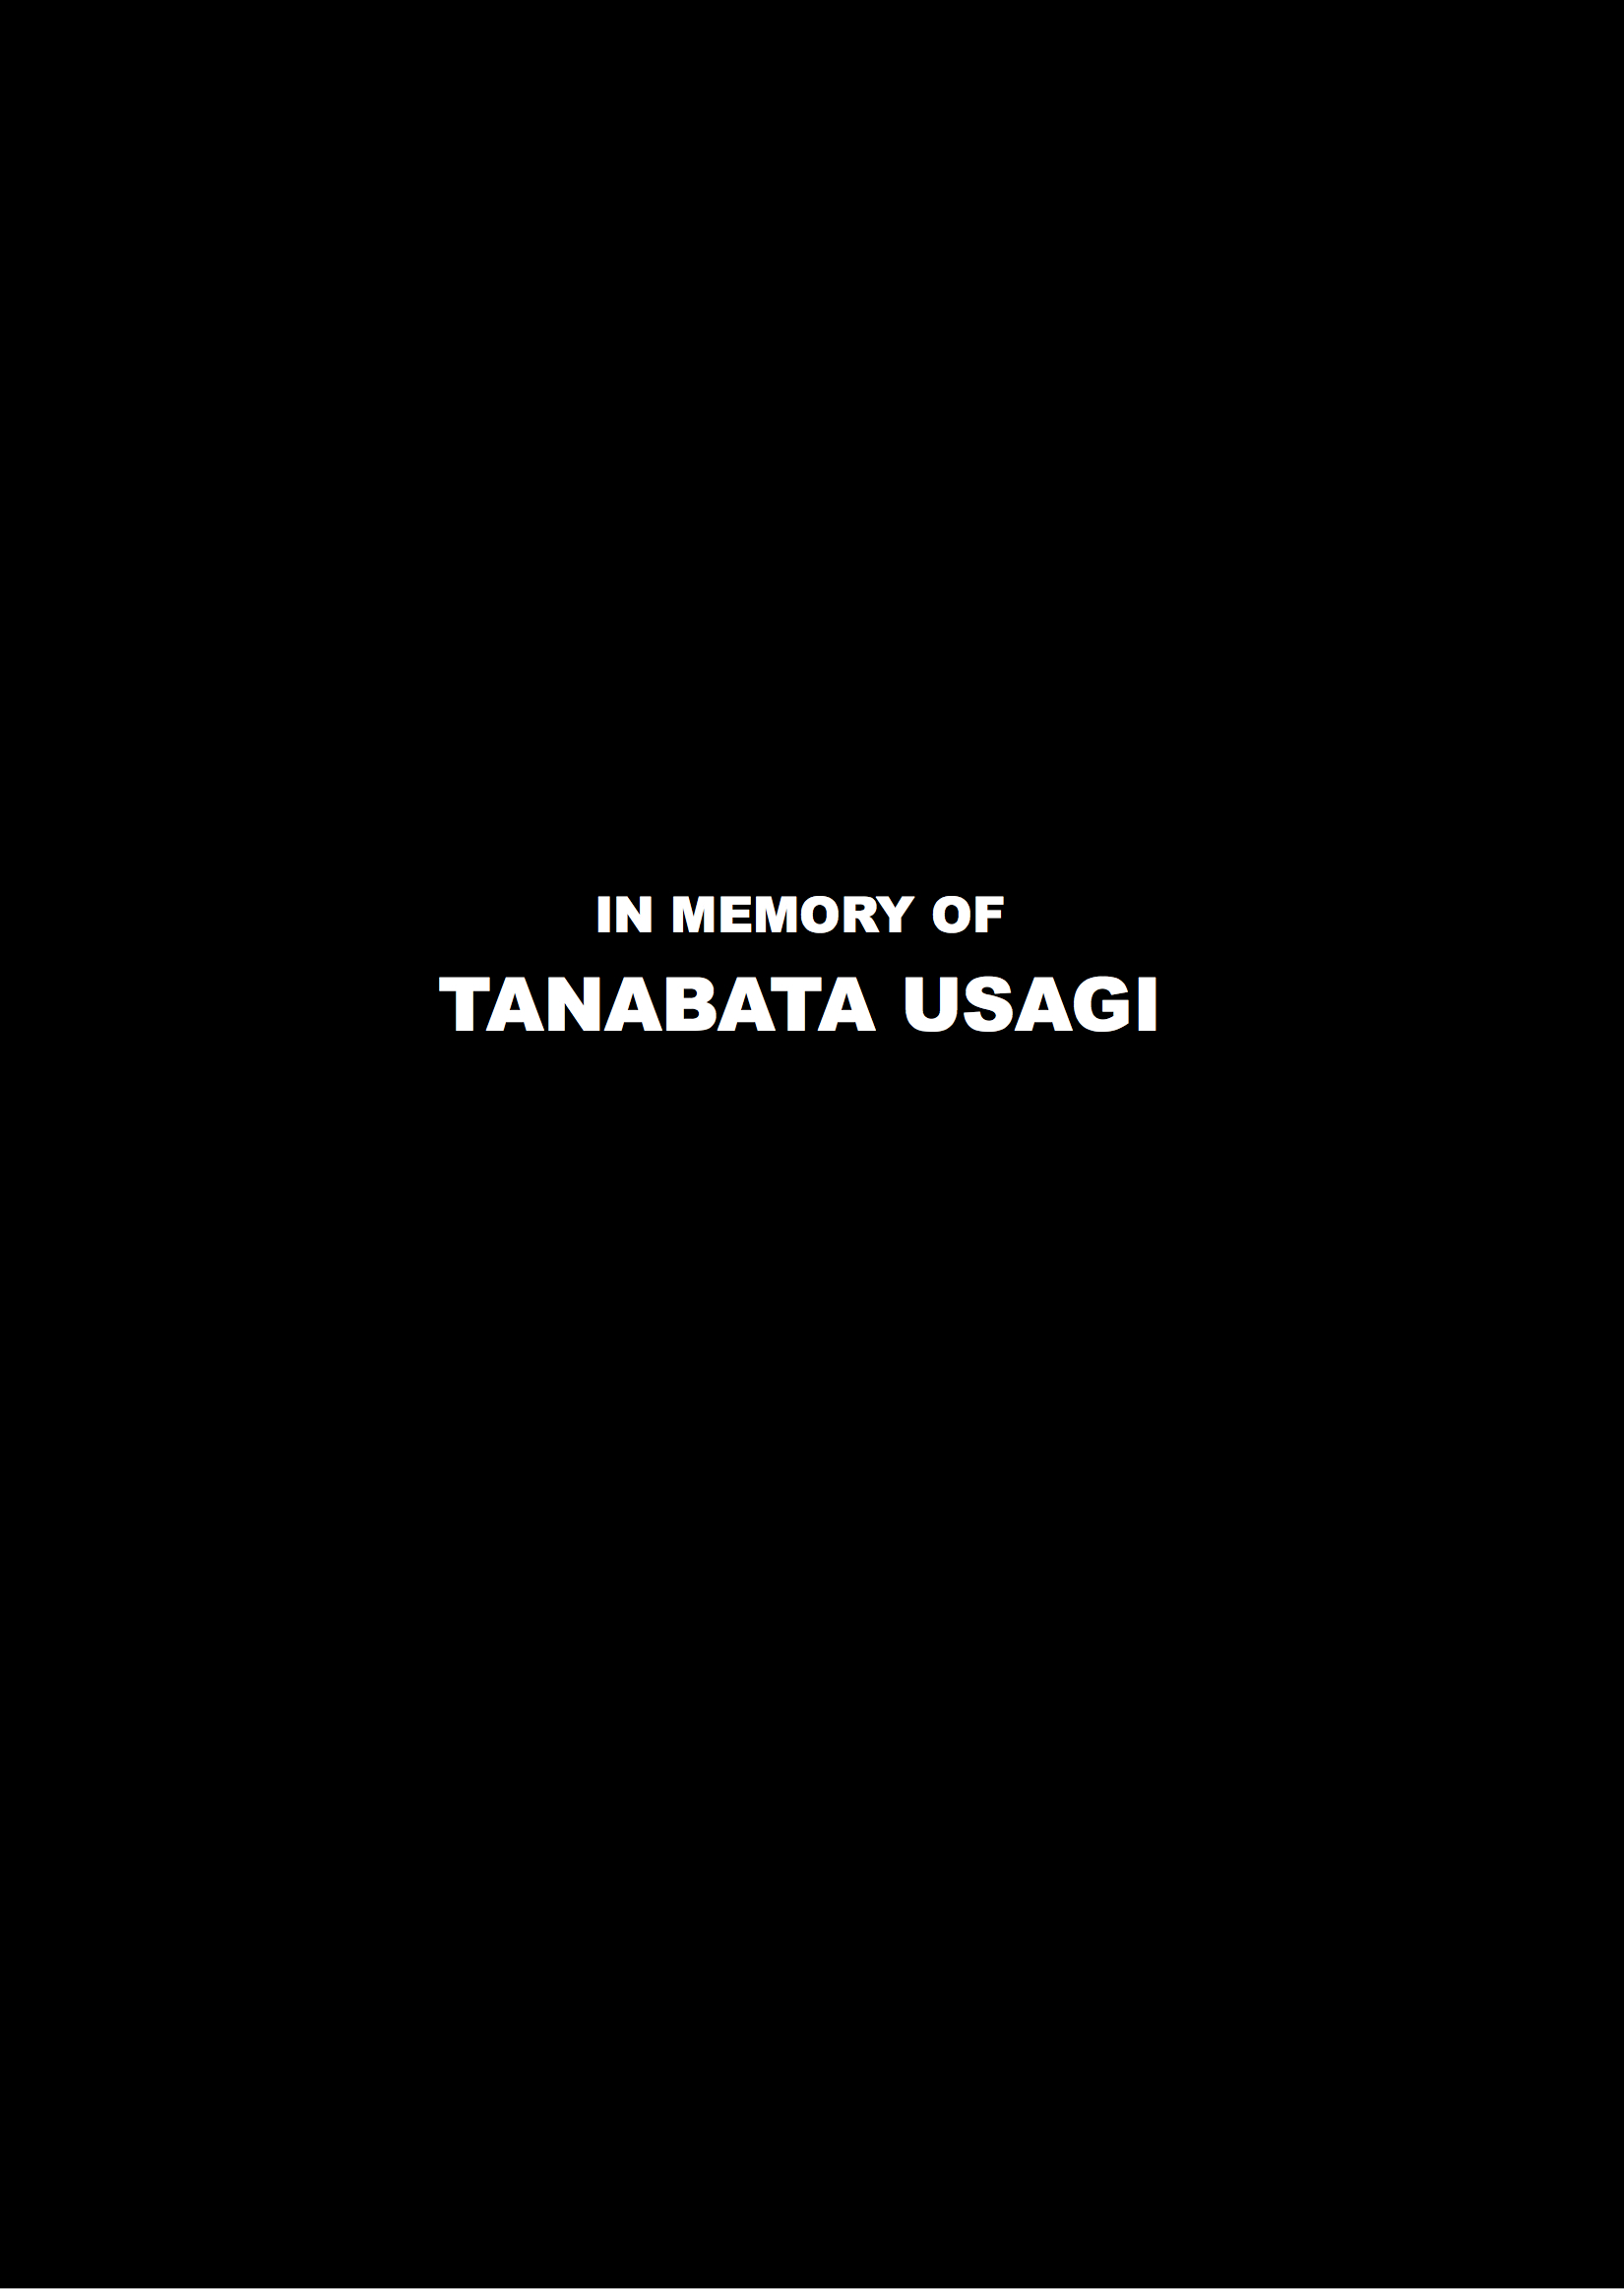 In Memory of Tanabata Usagi